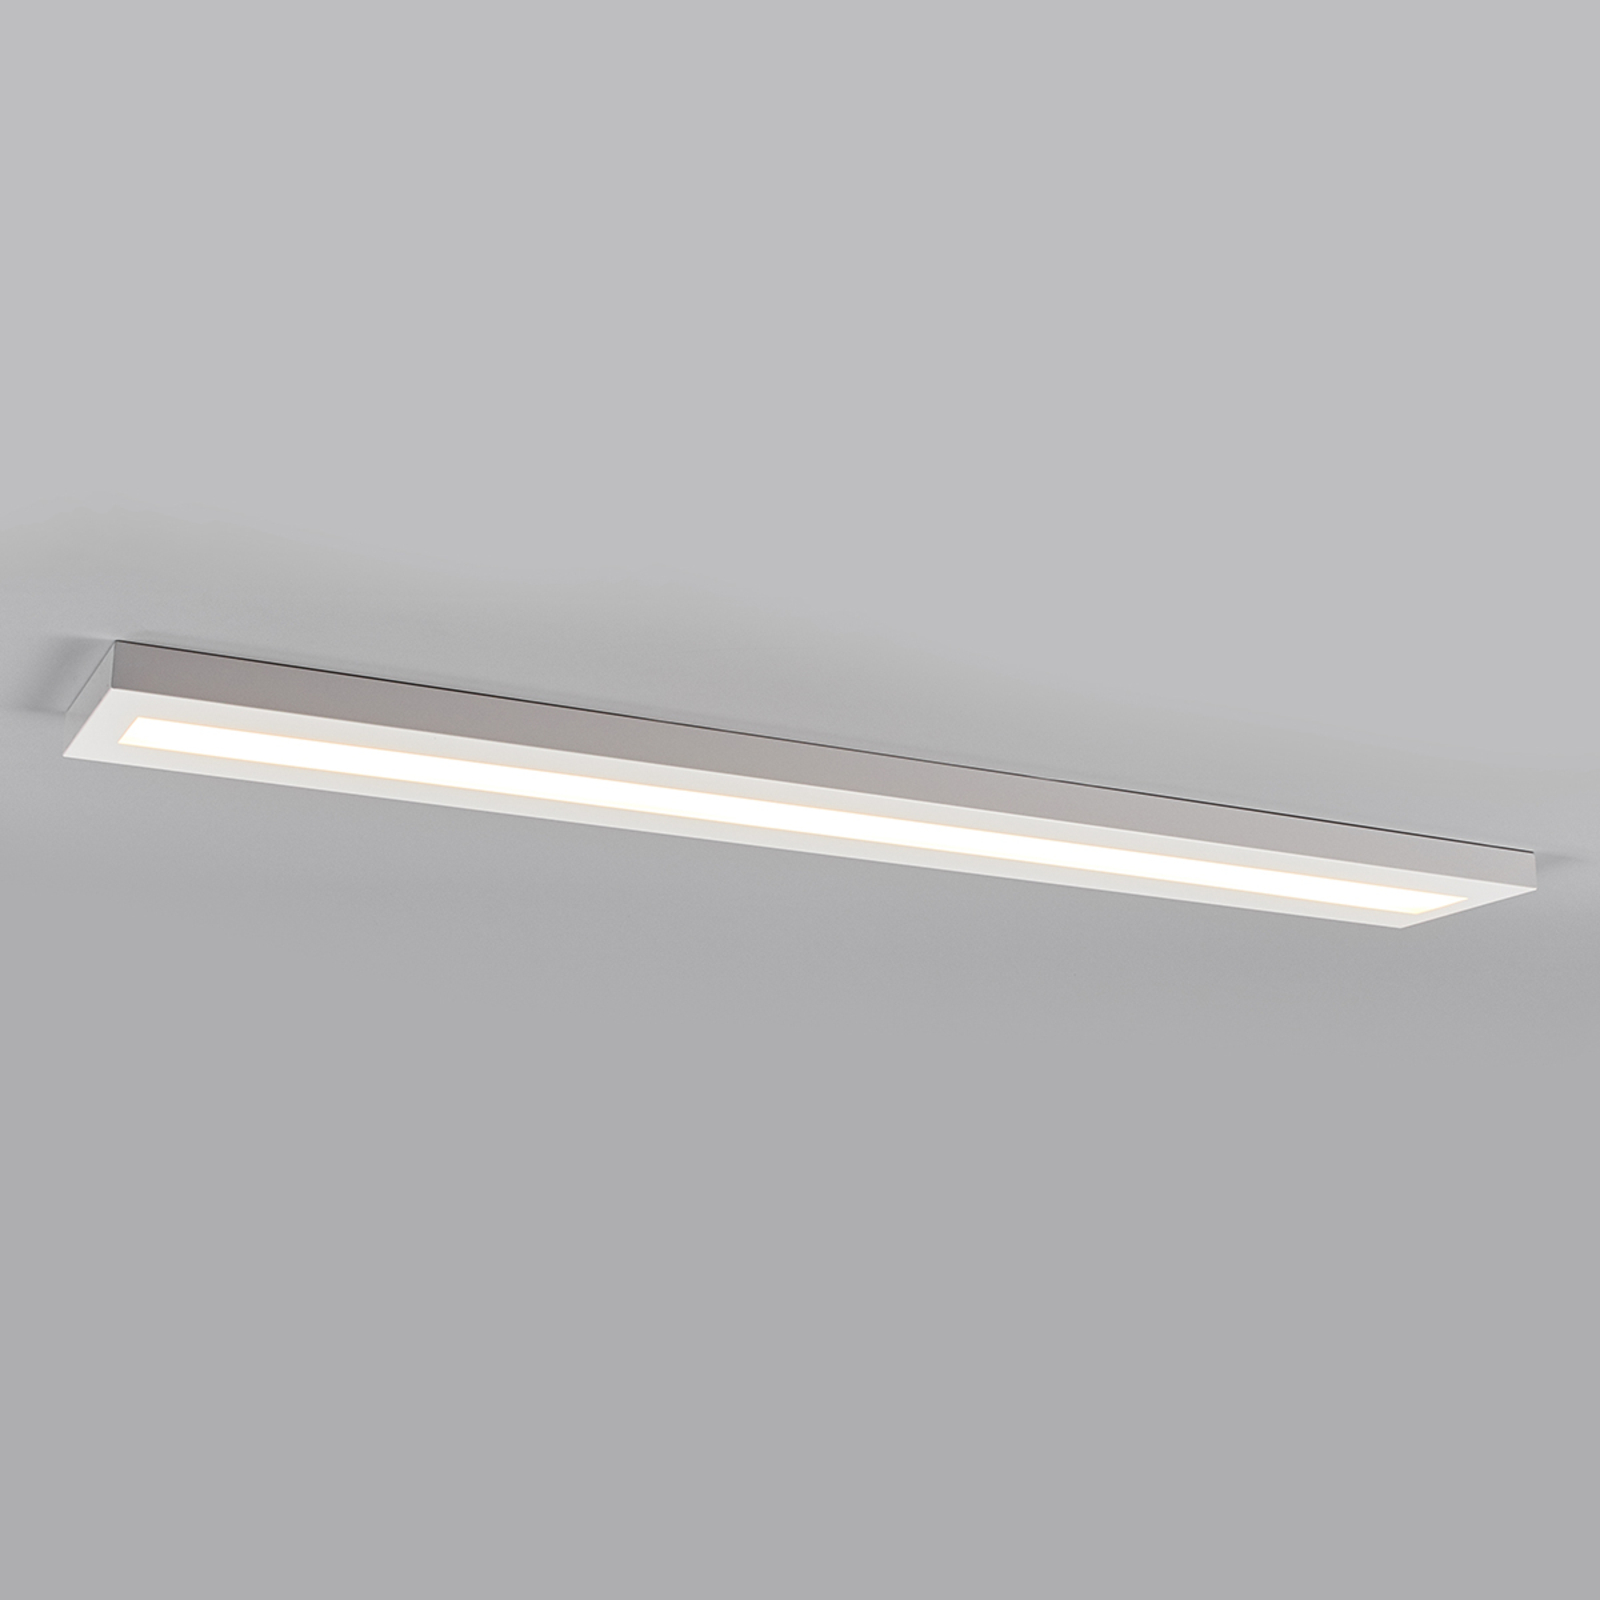 Längliche LED-Anbauleuchte 150 cm weiß, BAP